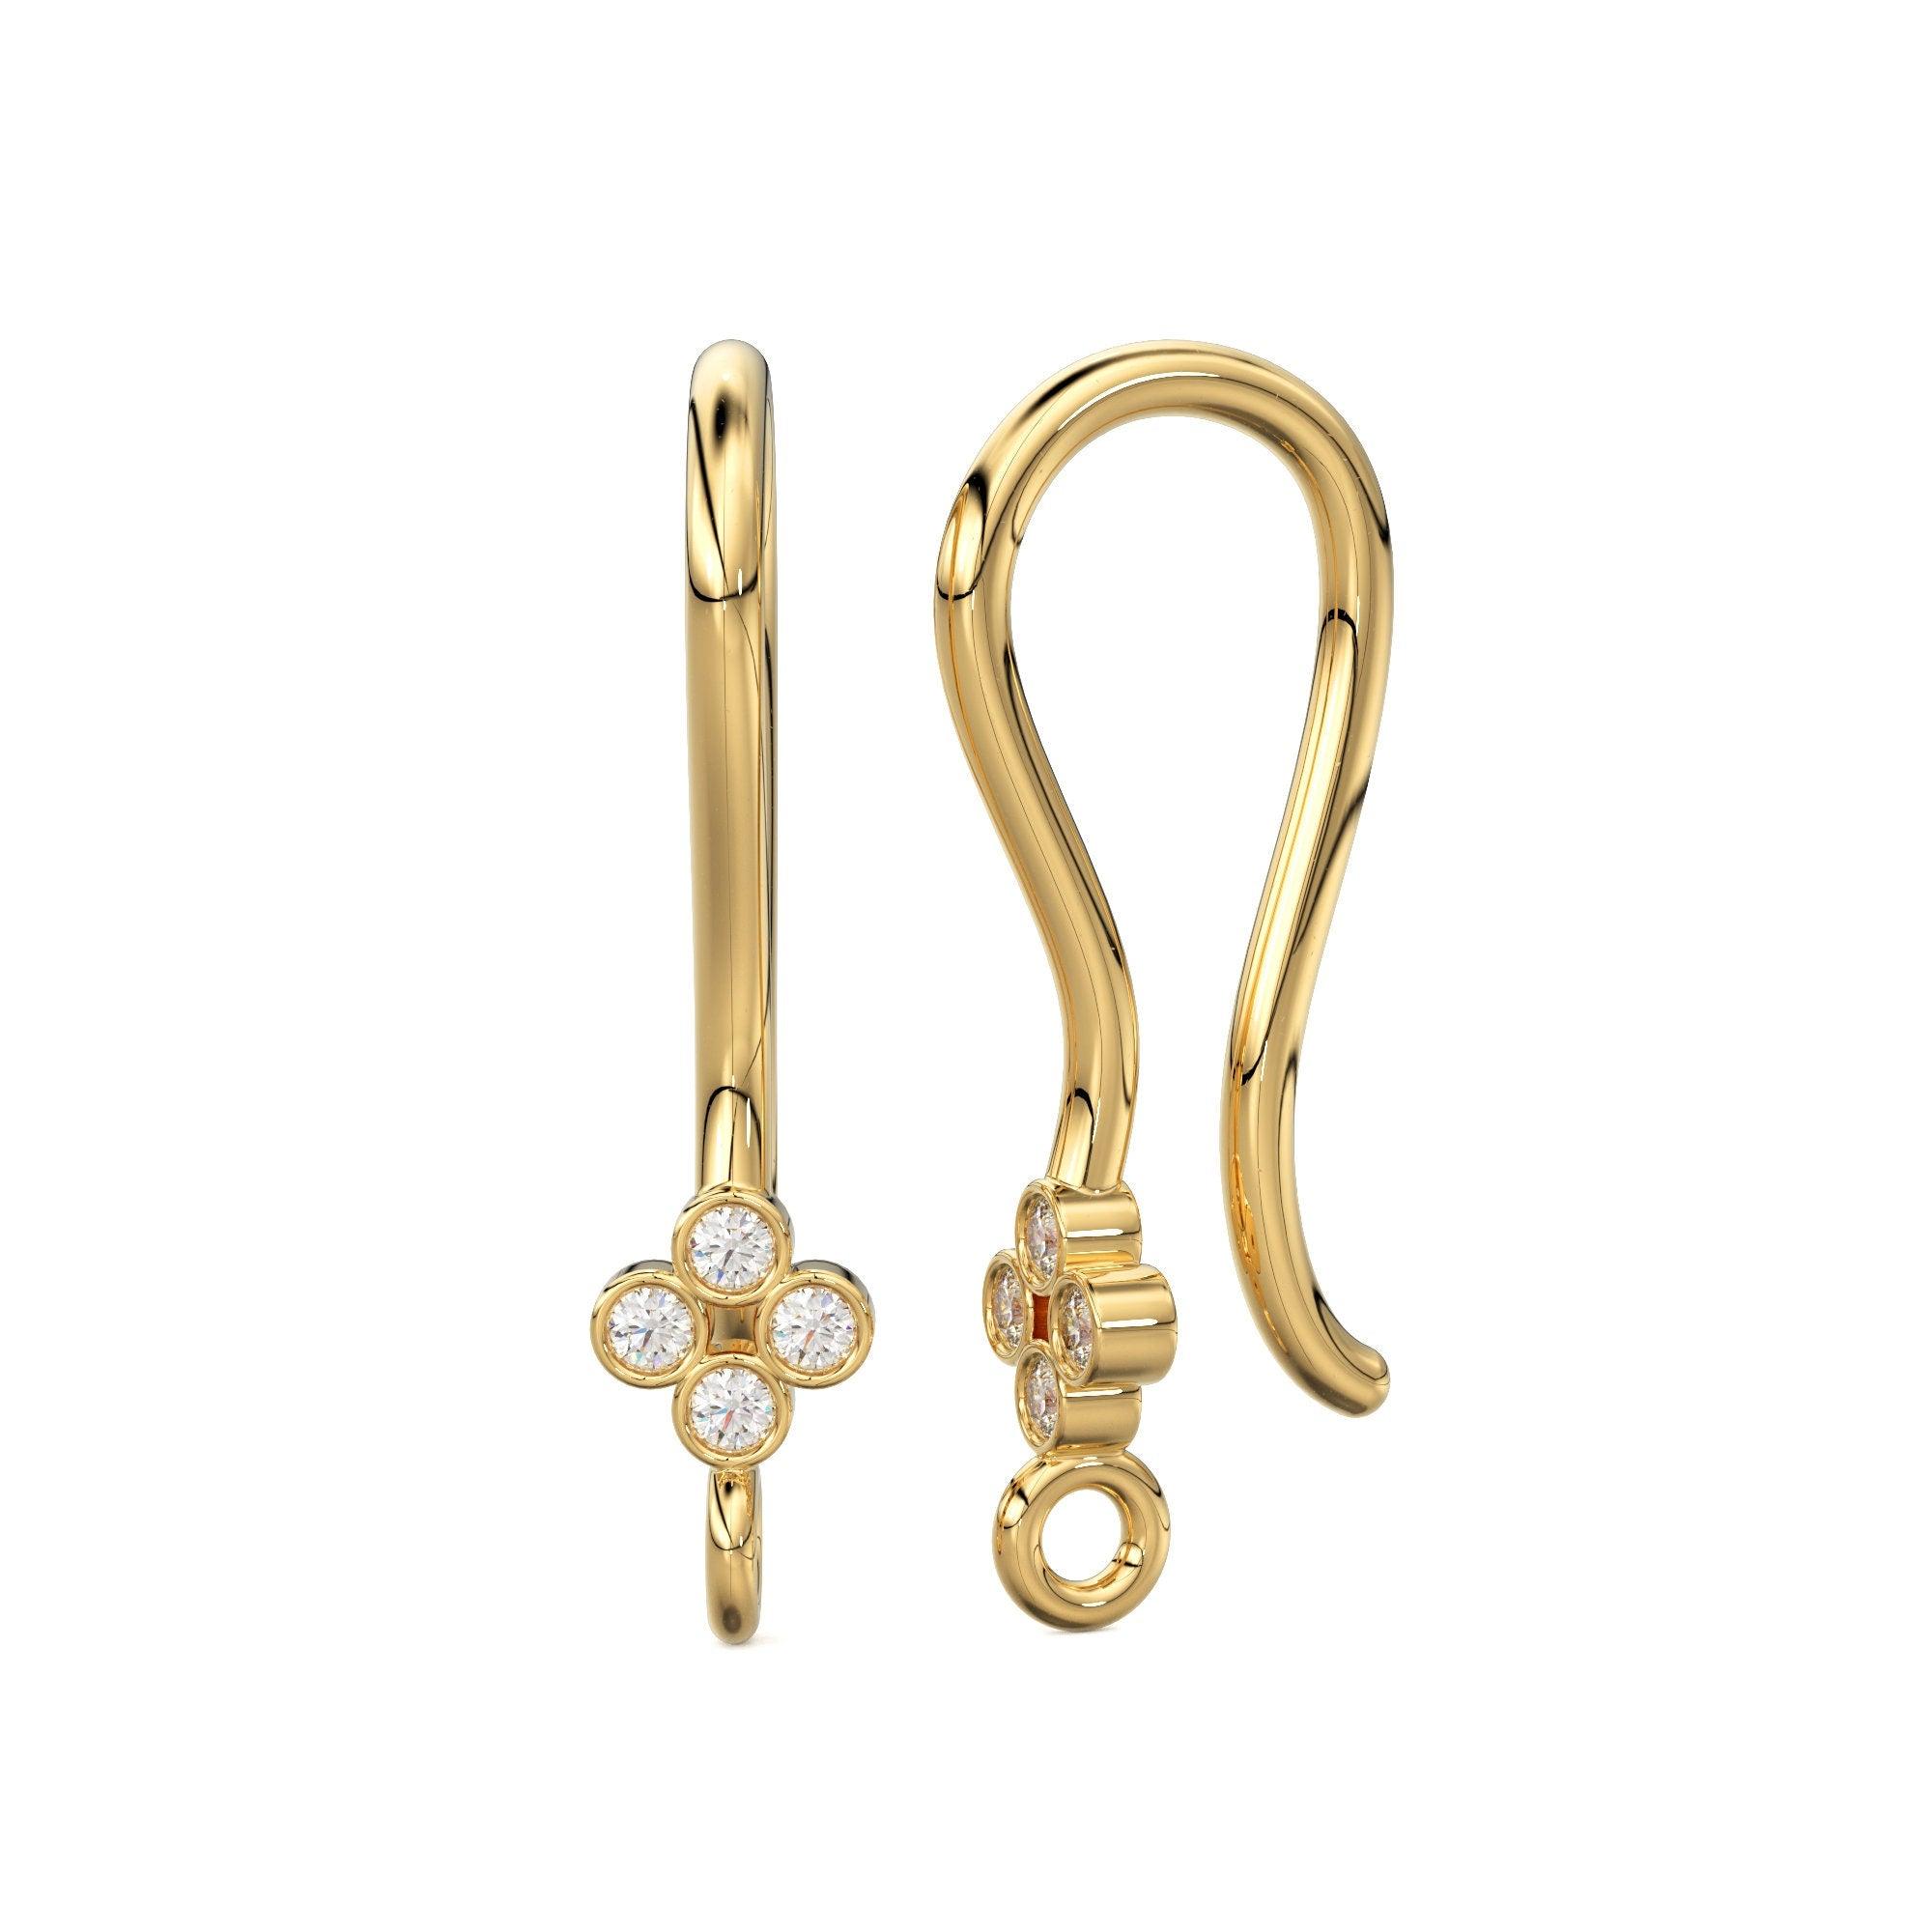 14k Gold Ear Wire Solid Gold French Earring Hooks, Handmade 14k Earwire  Findings